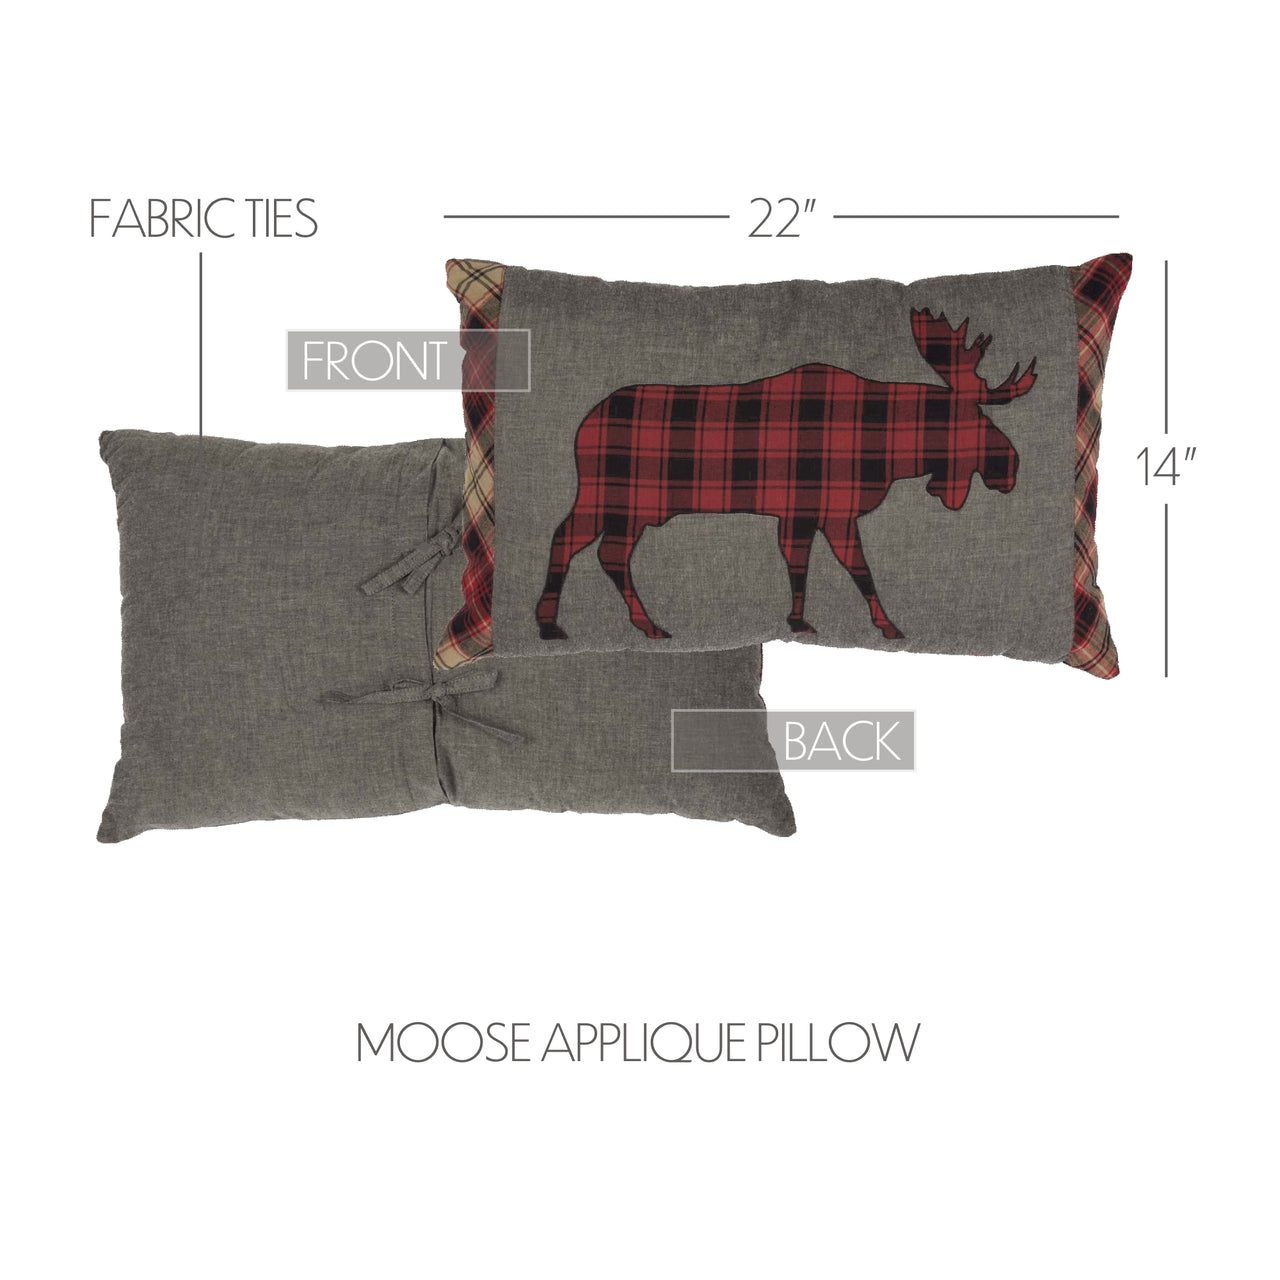 Cumberland Moose Applique Pillow 14"x22" VHC Brands